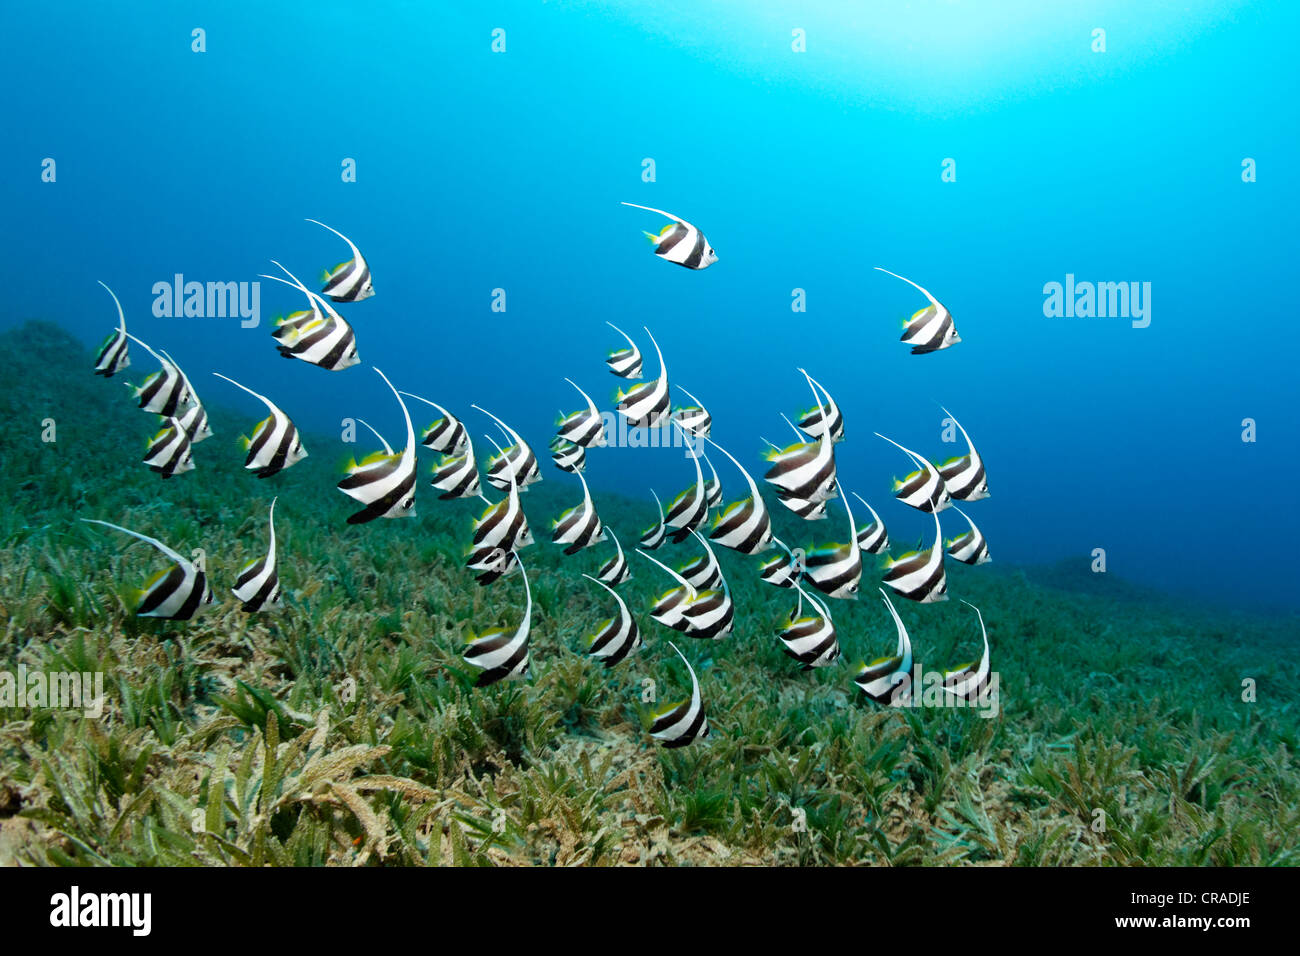 Banc de la scolarisation des mineurs bannerfish (Heniochus diphreutes) seeweed, nage au-dessus du Royaume hachémite de Jordanie, Mer Rouge Banque D'Images